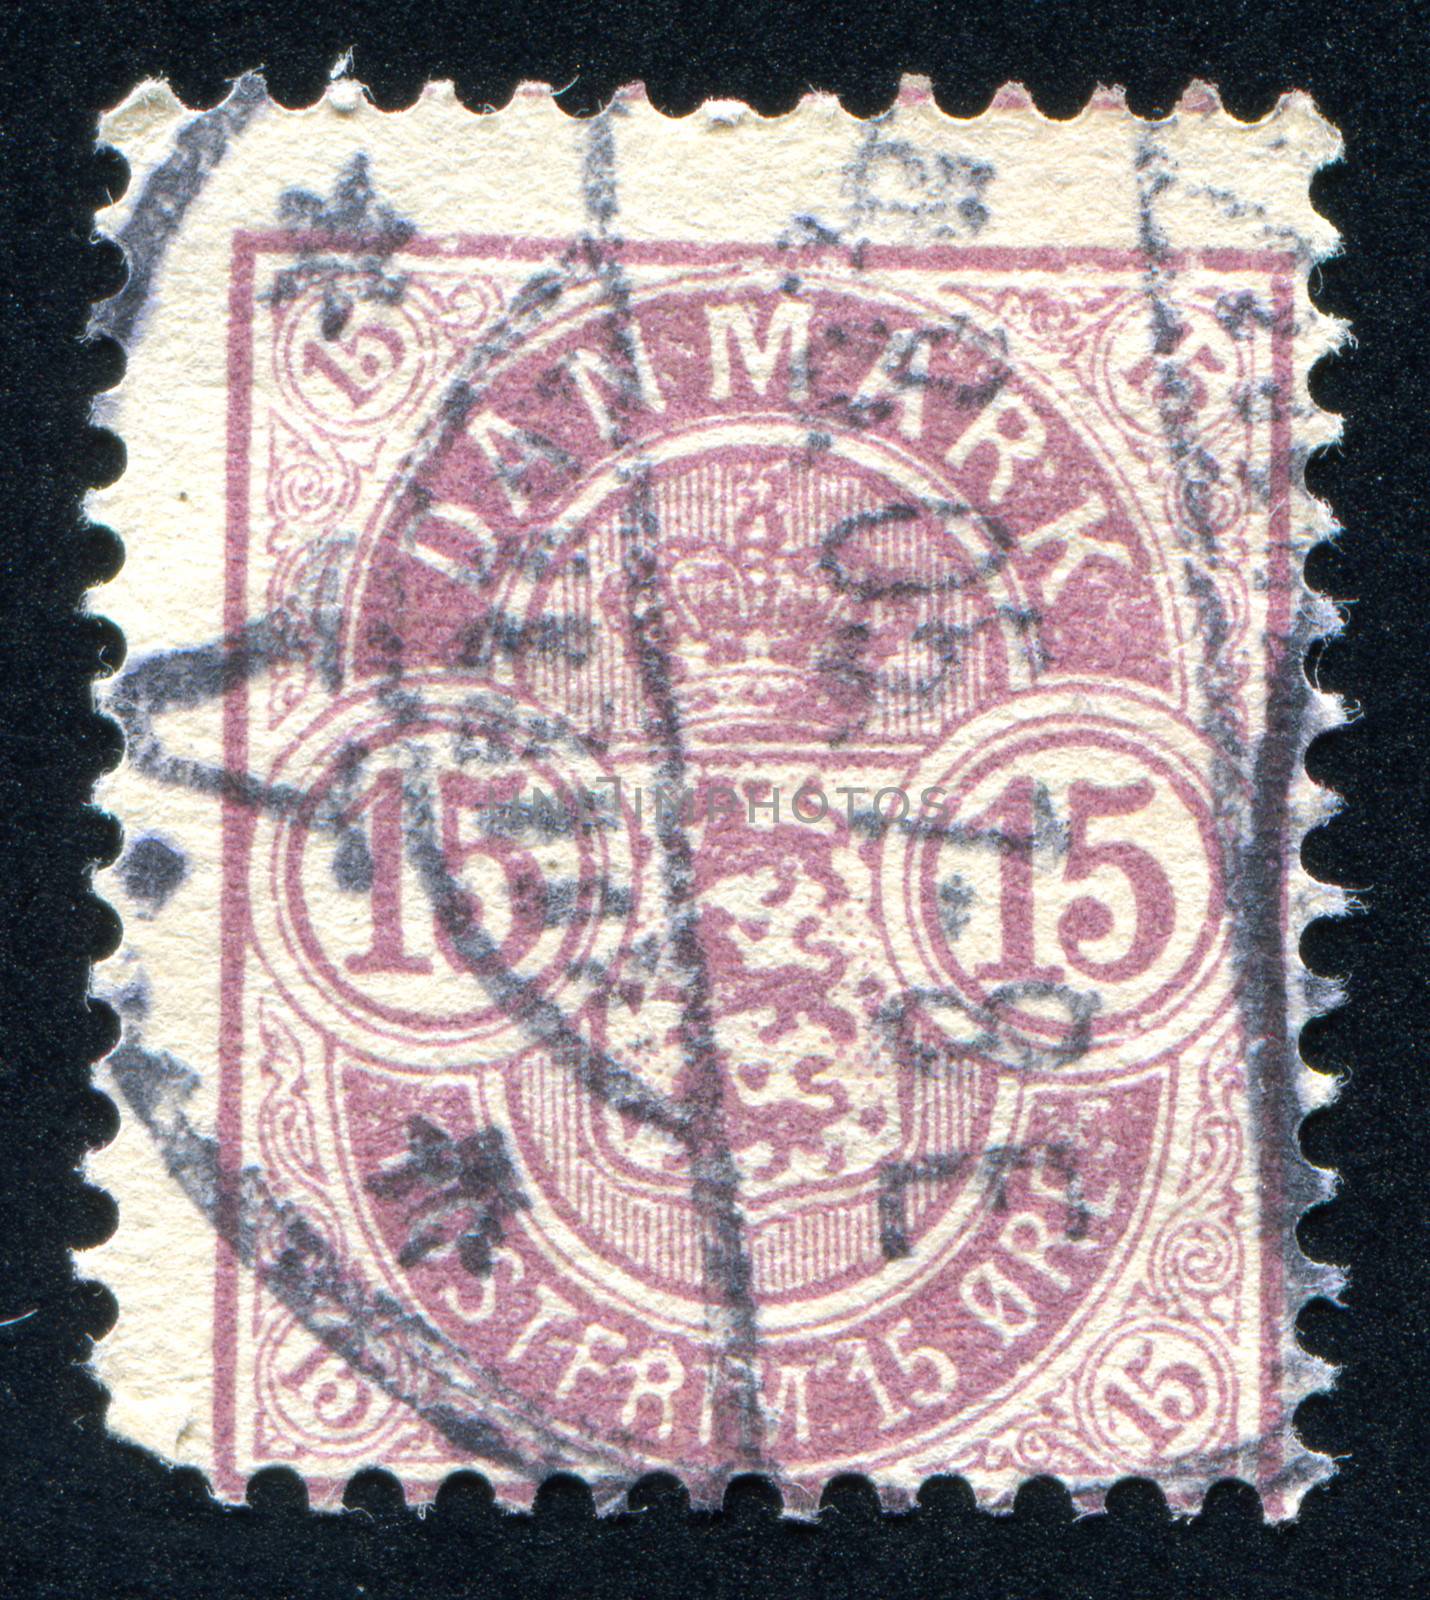 DENMARK - CIRCA 1902: stamp printed by Denmark, shows Arms, circa 1902